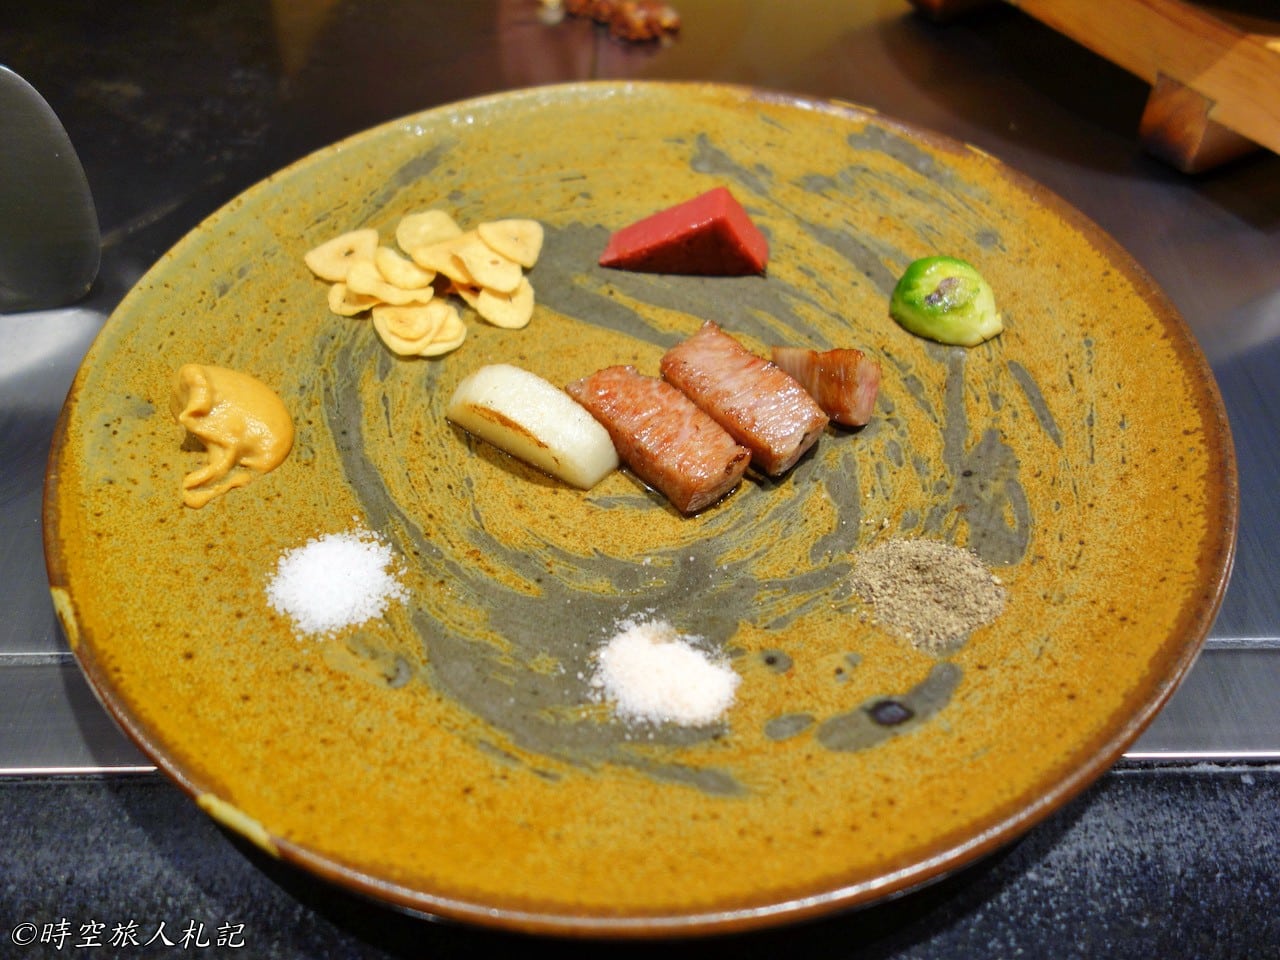 神戶美食,kobe-food,日本神戶美食 24